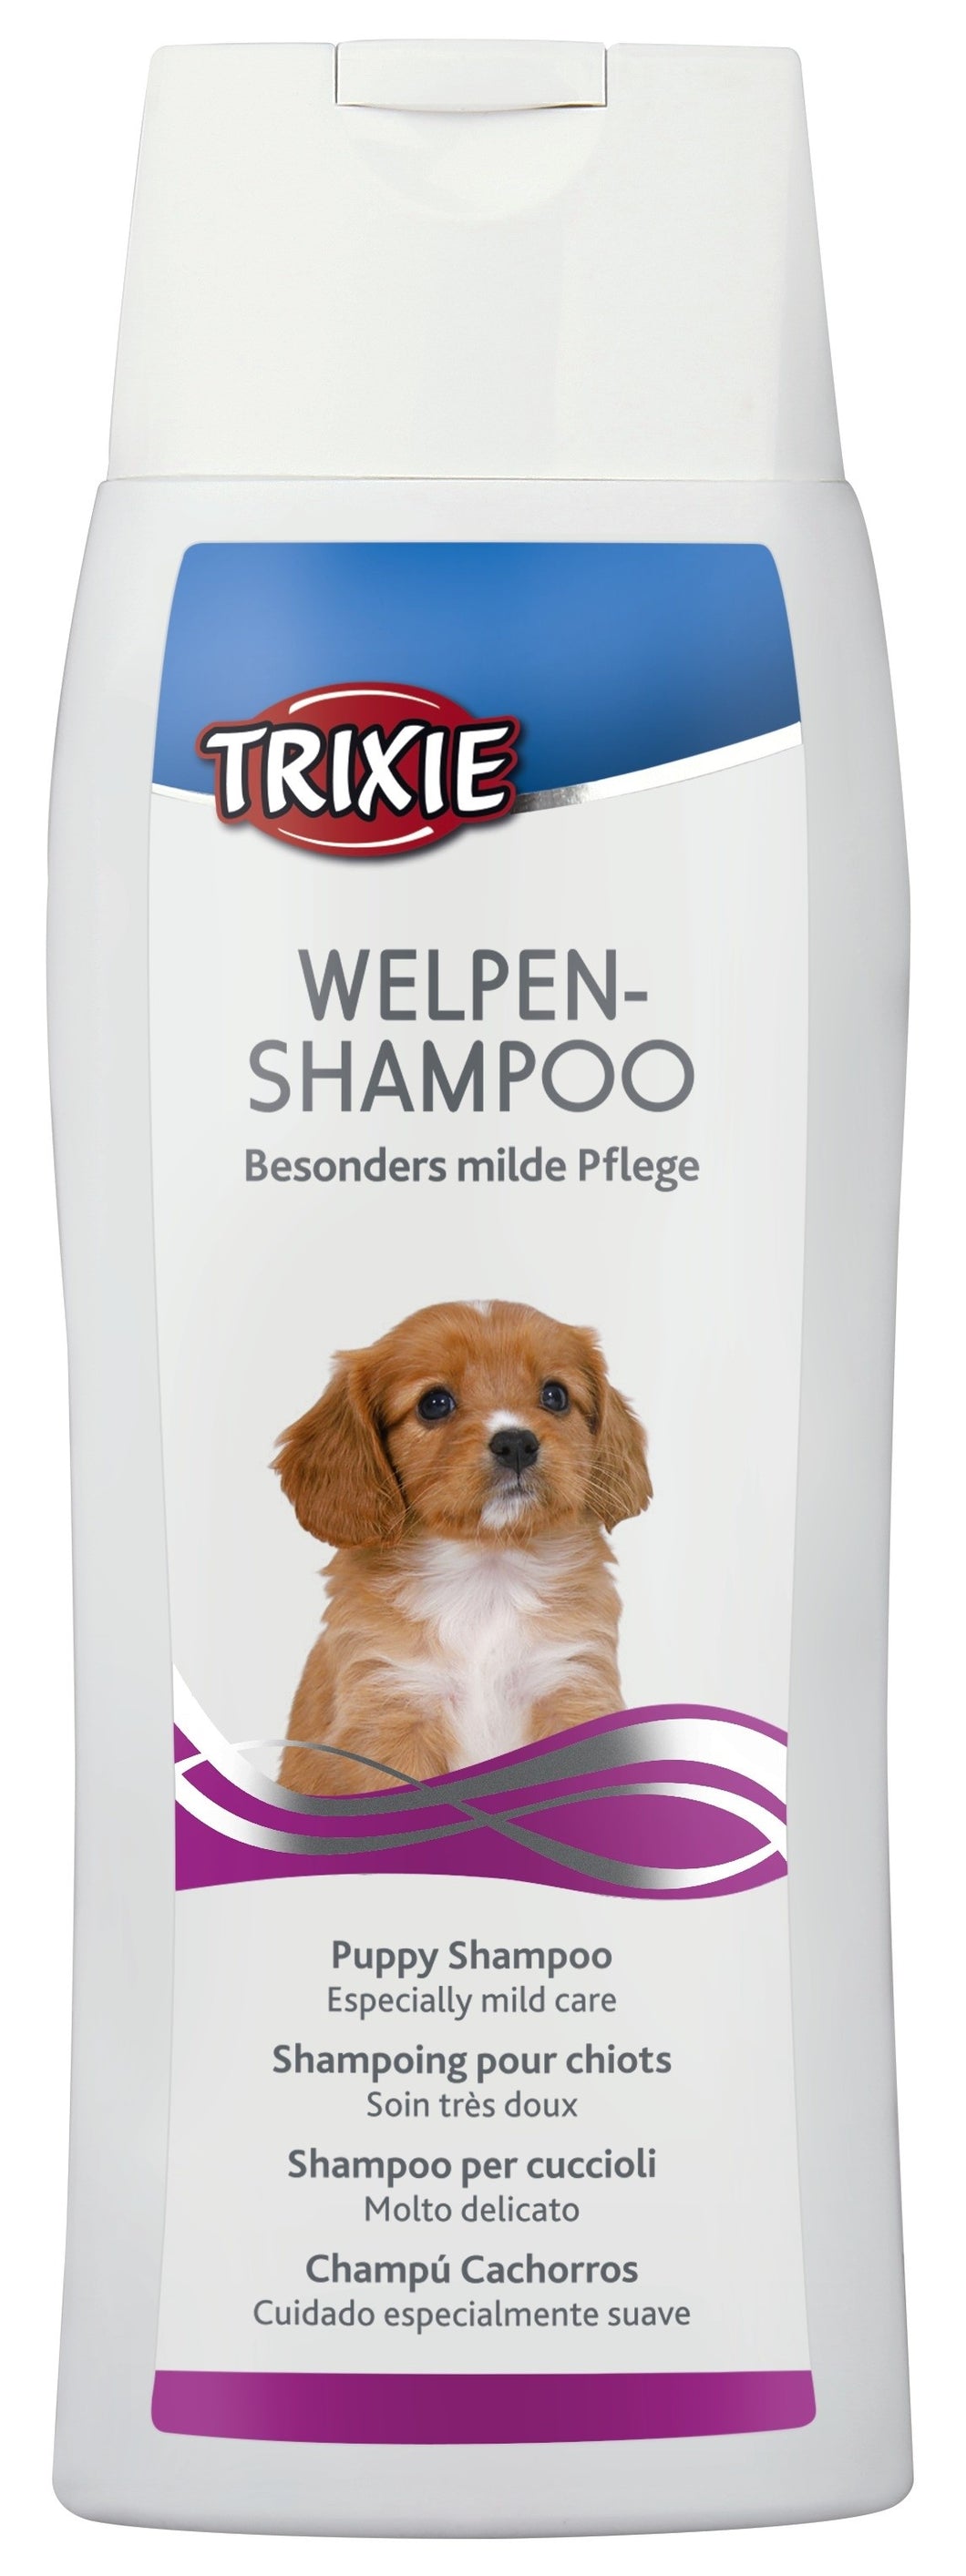 Welpen-Shampoo, 250 ml